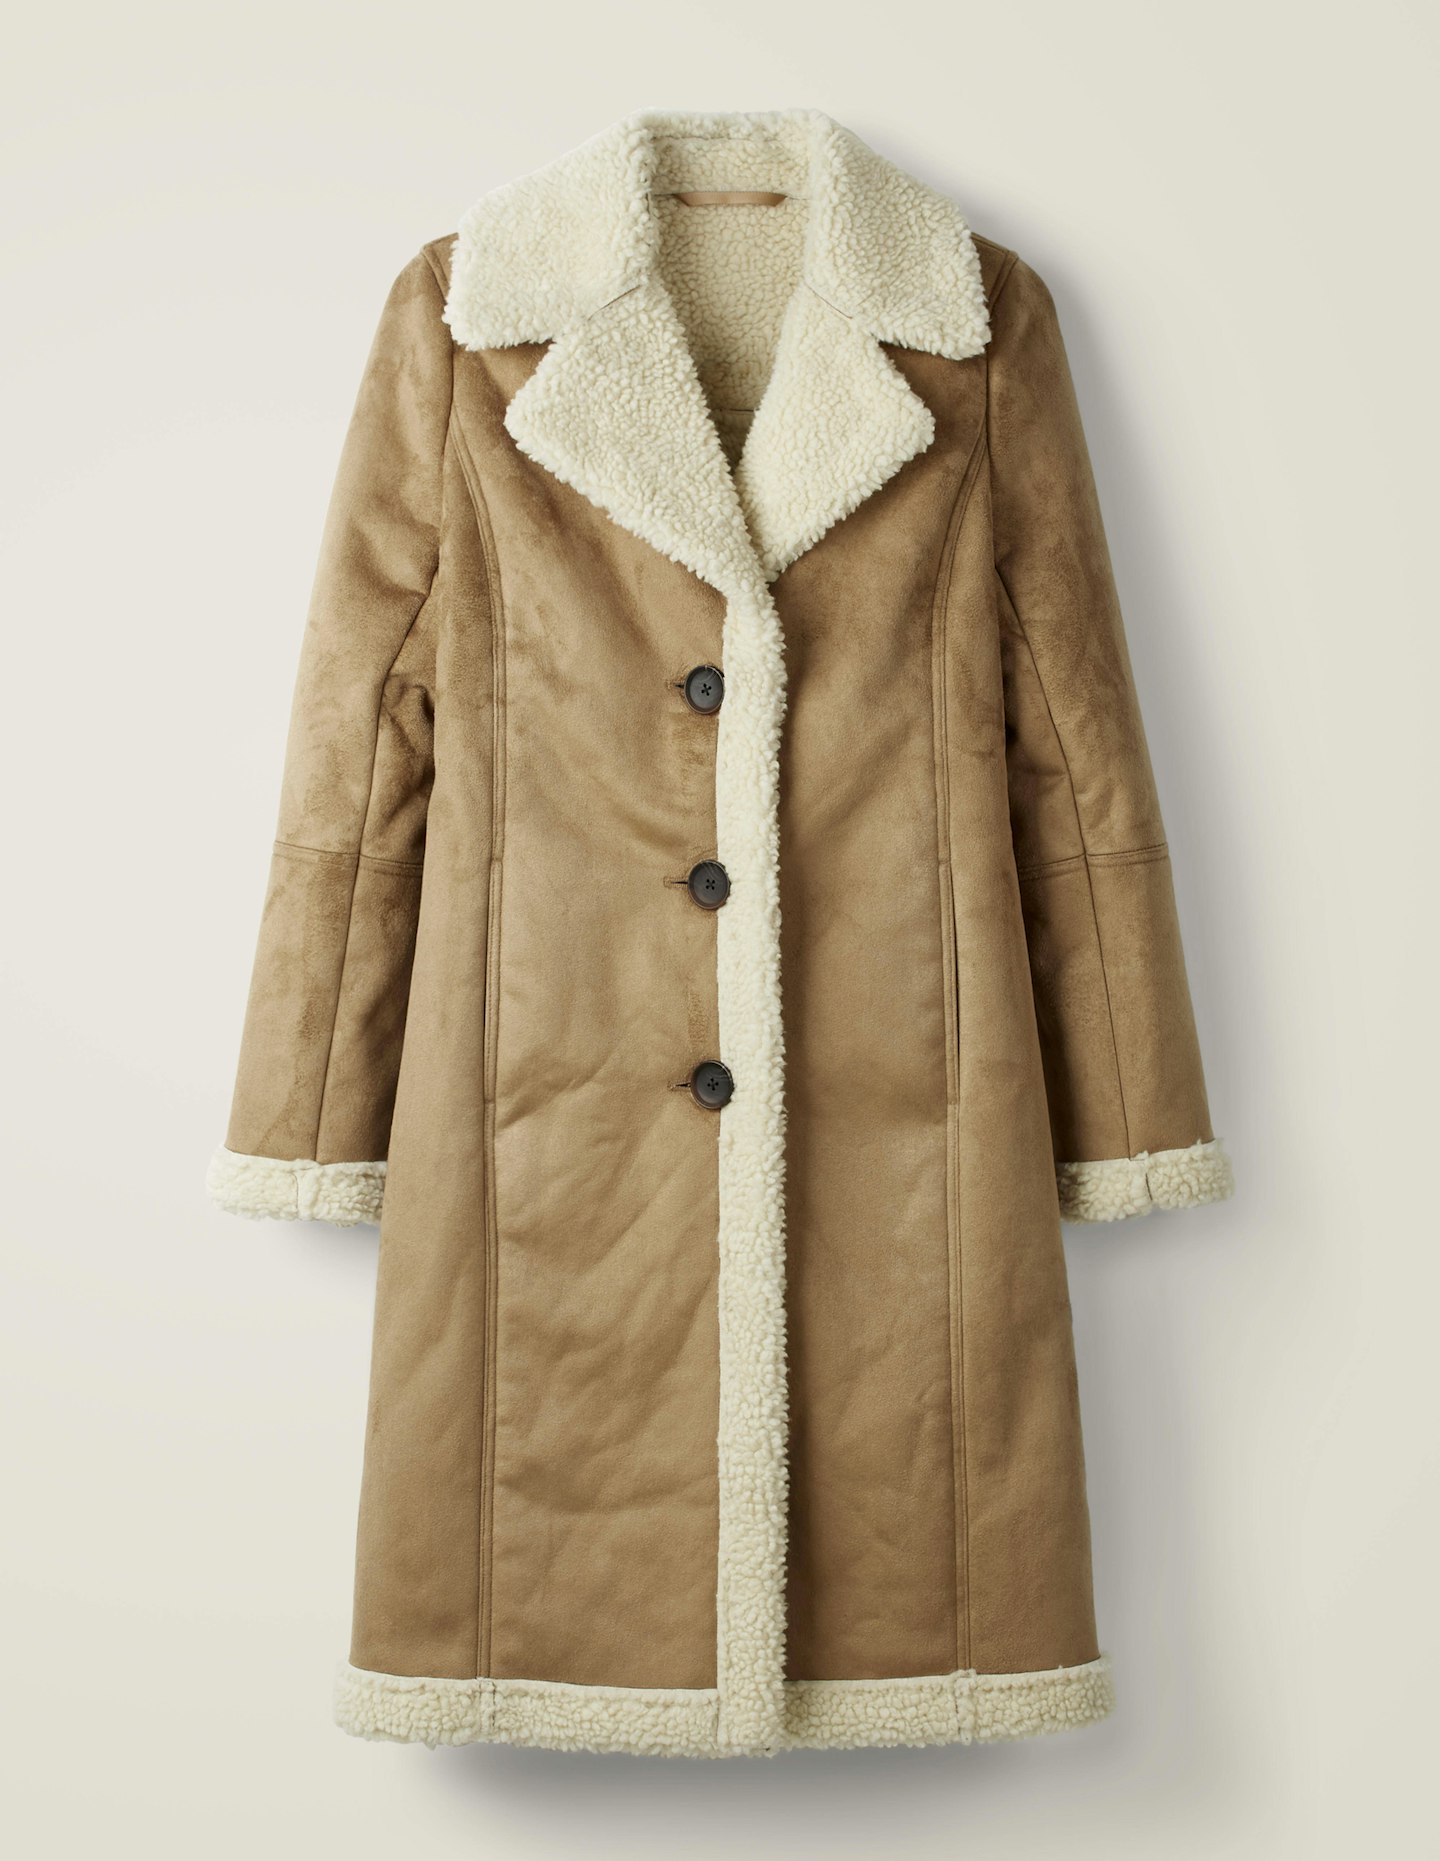 Boden coat